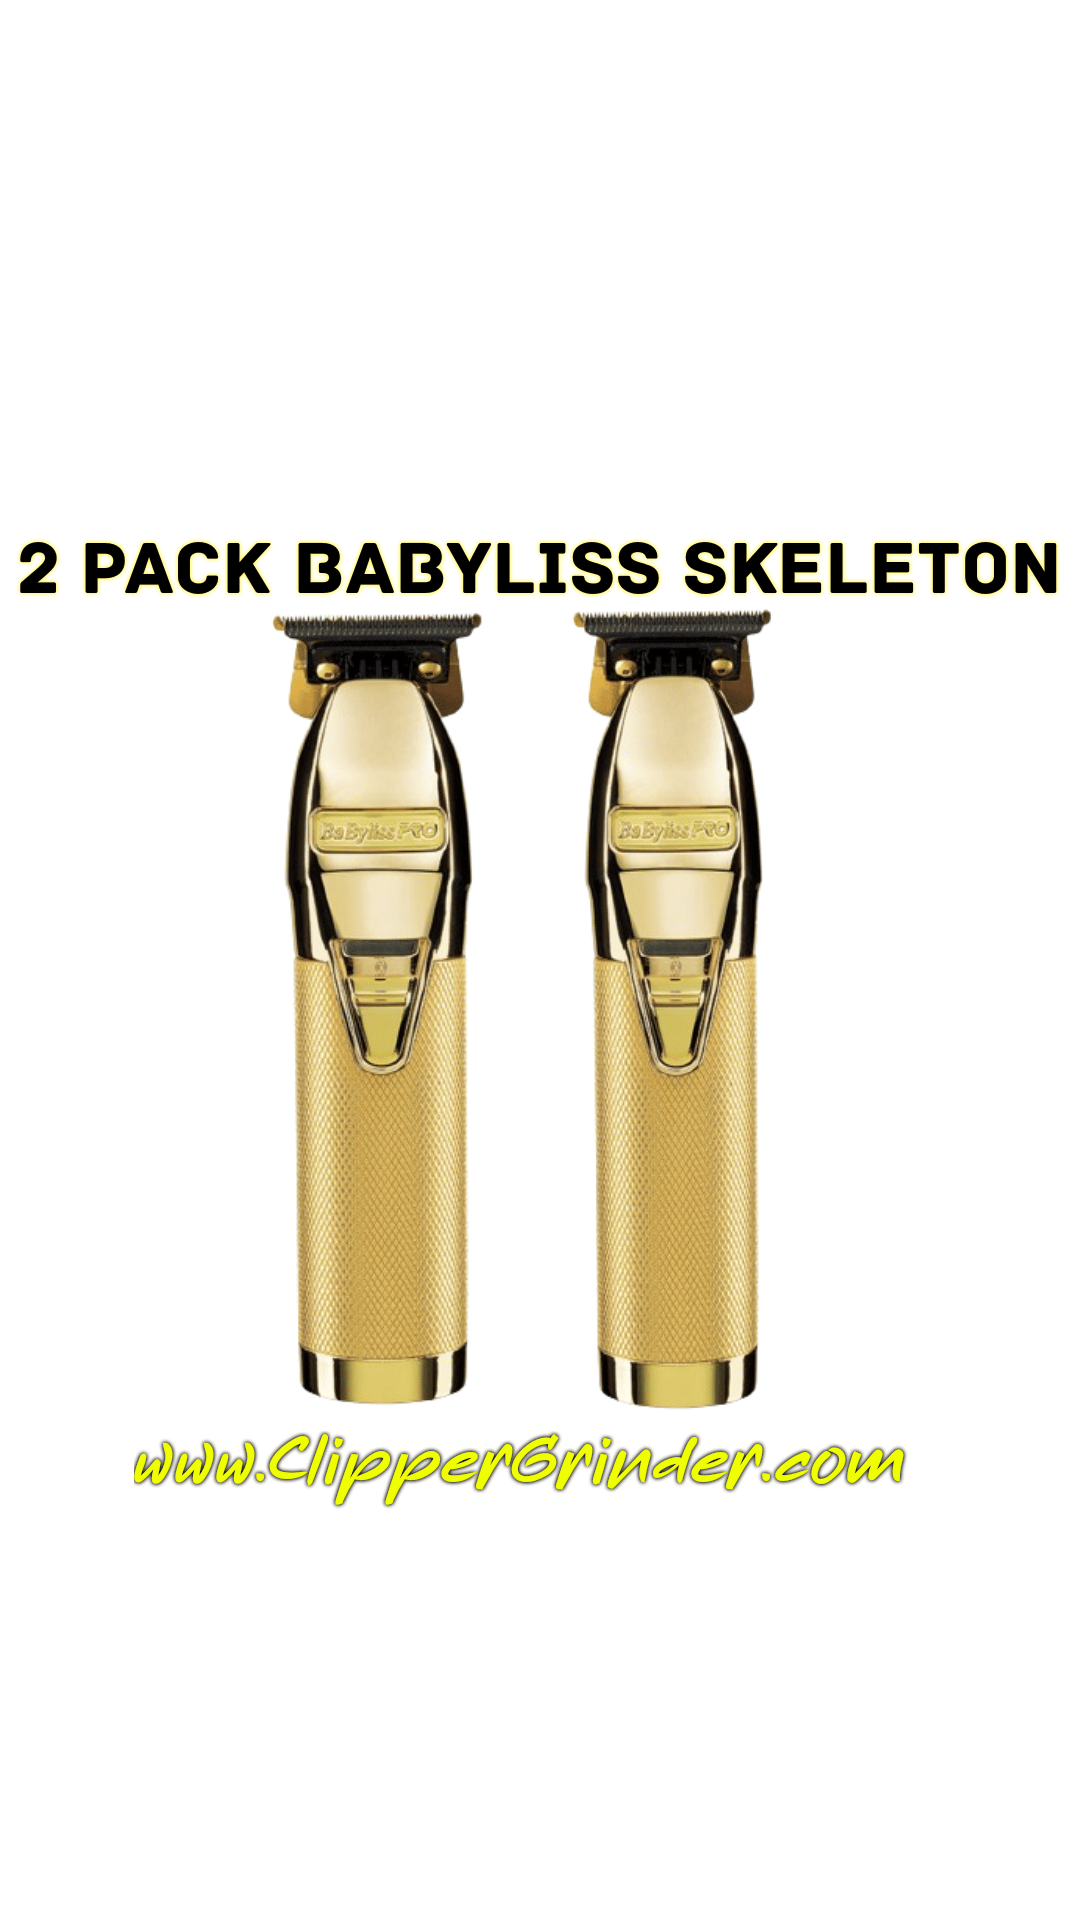 3 Week Delivery/High Order Volume) Black Babyliss Skeleton Trimmer W/Gold  Modified Blade